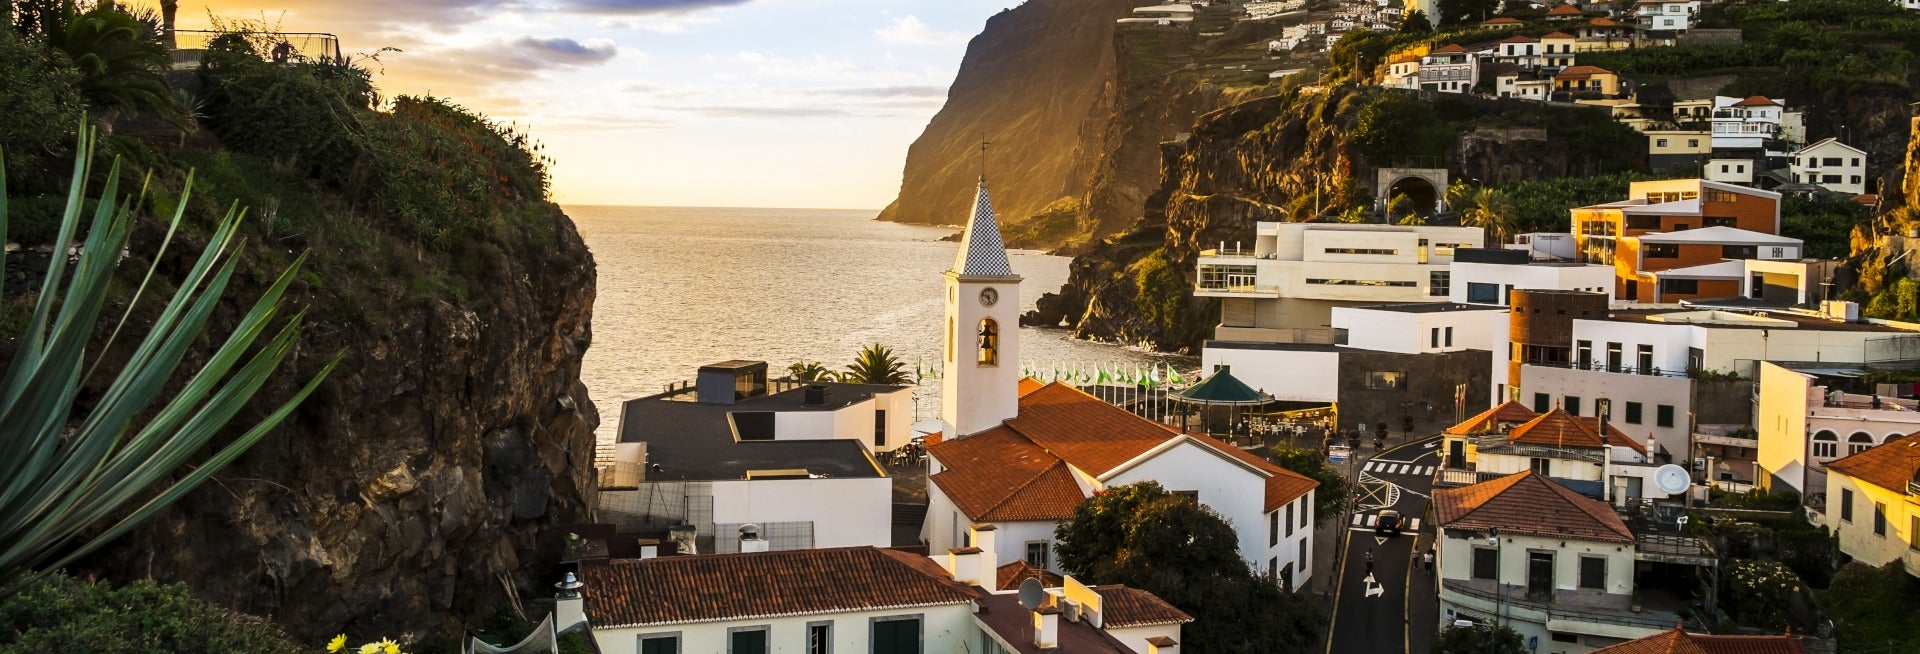 Tour completo pela Madeira em 2 dias